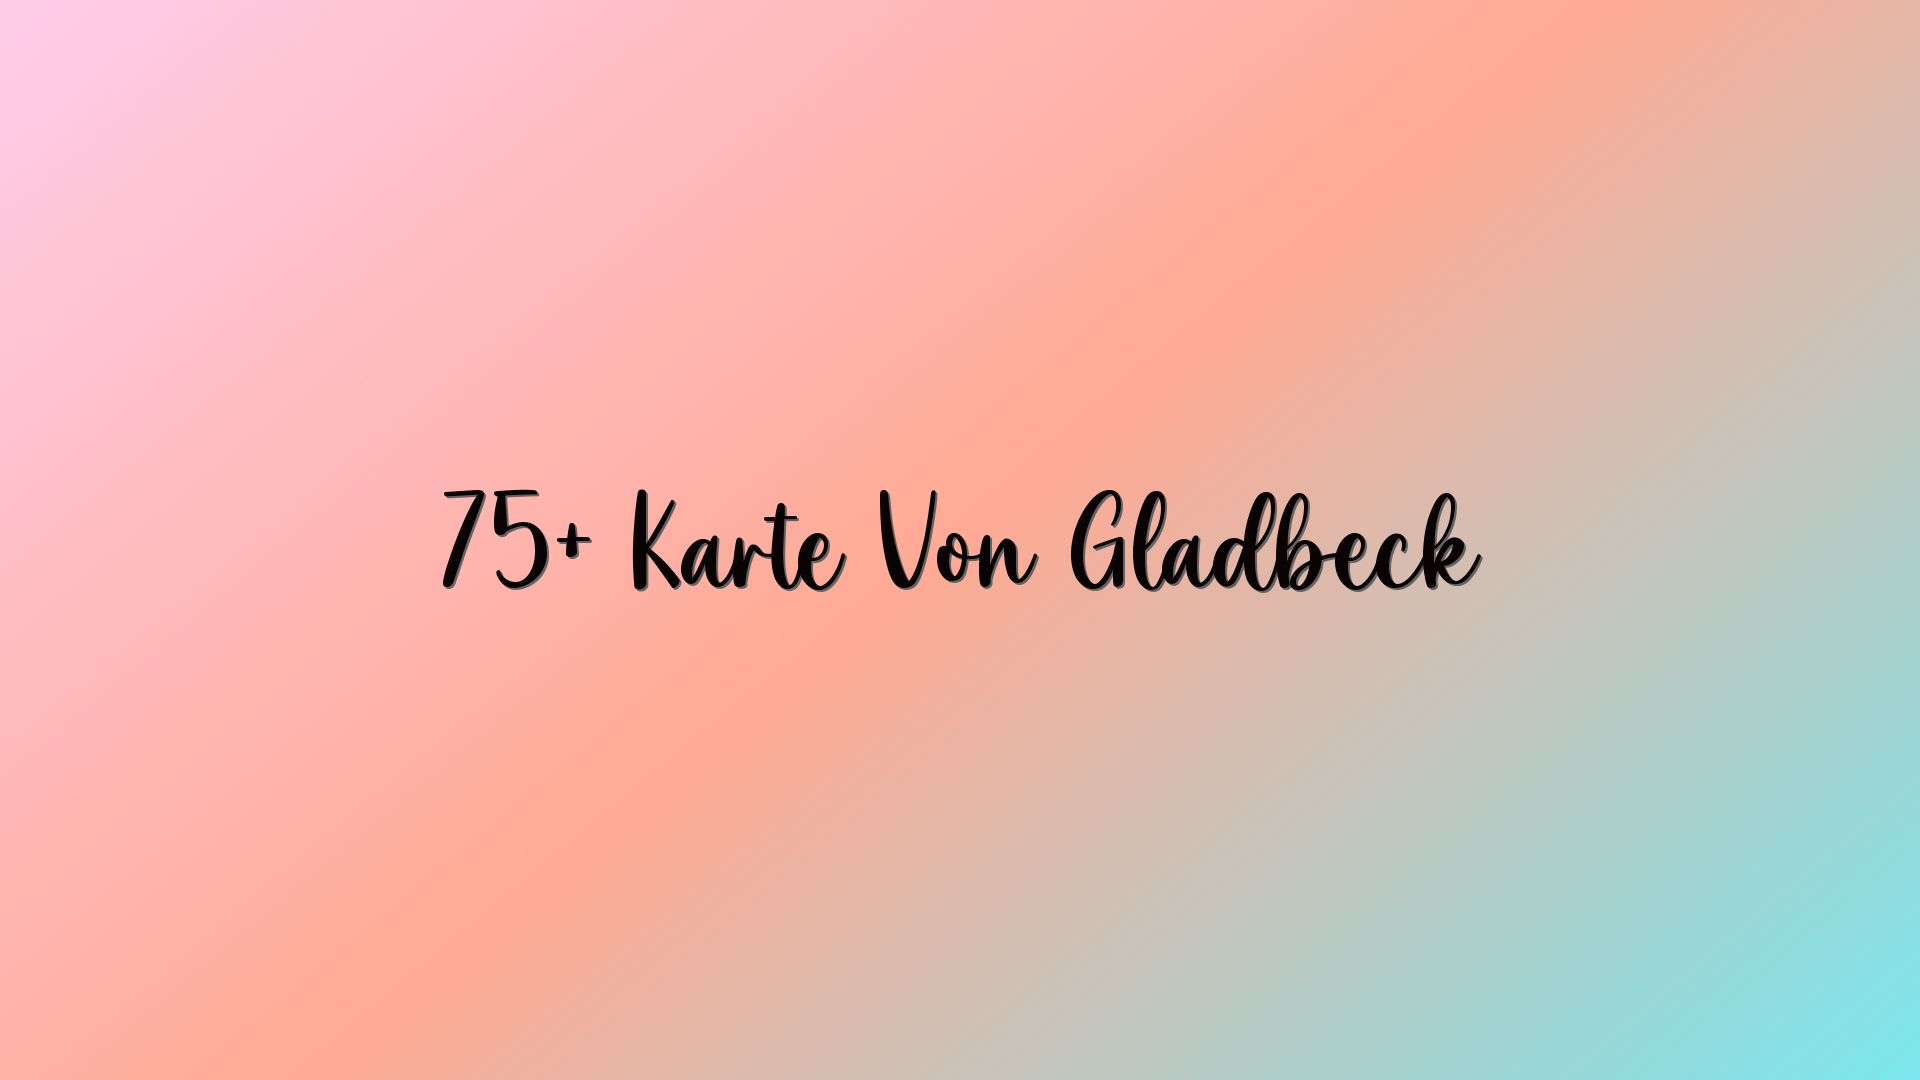 75+ Karte Von Gladbeck